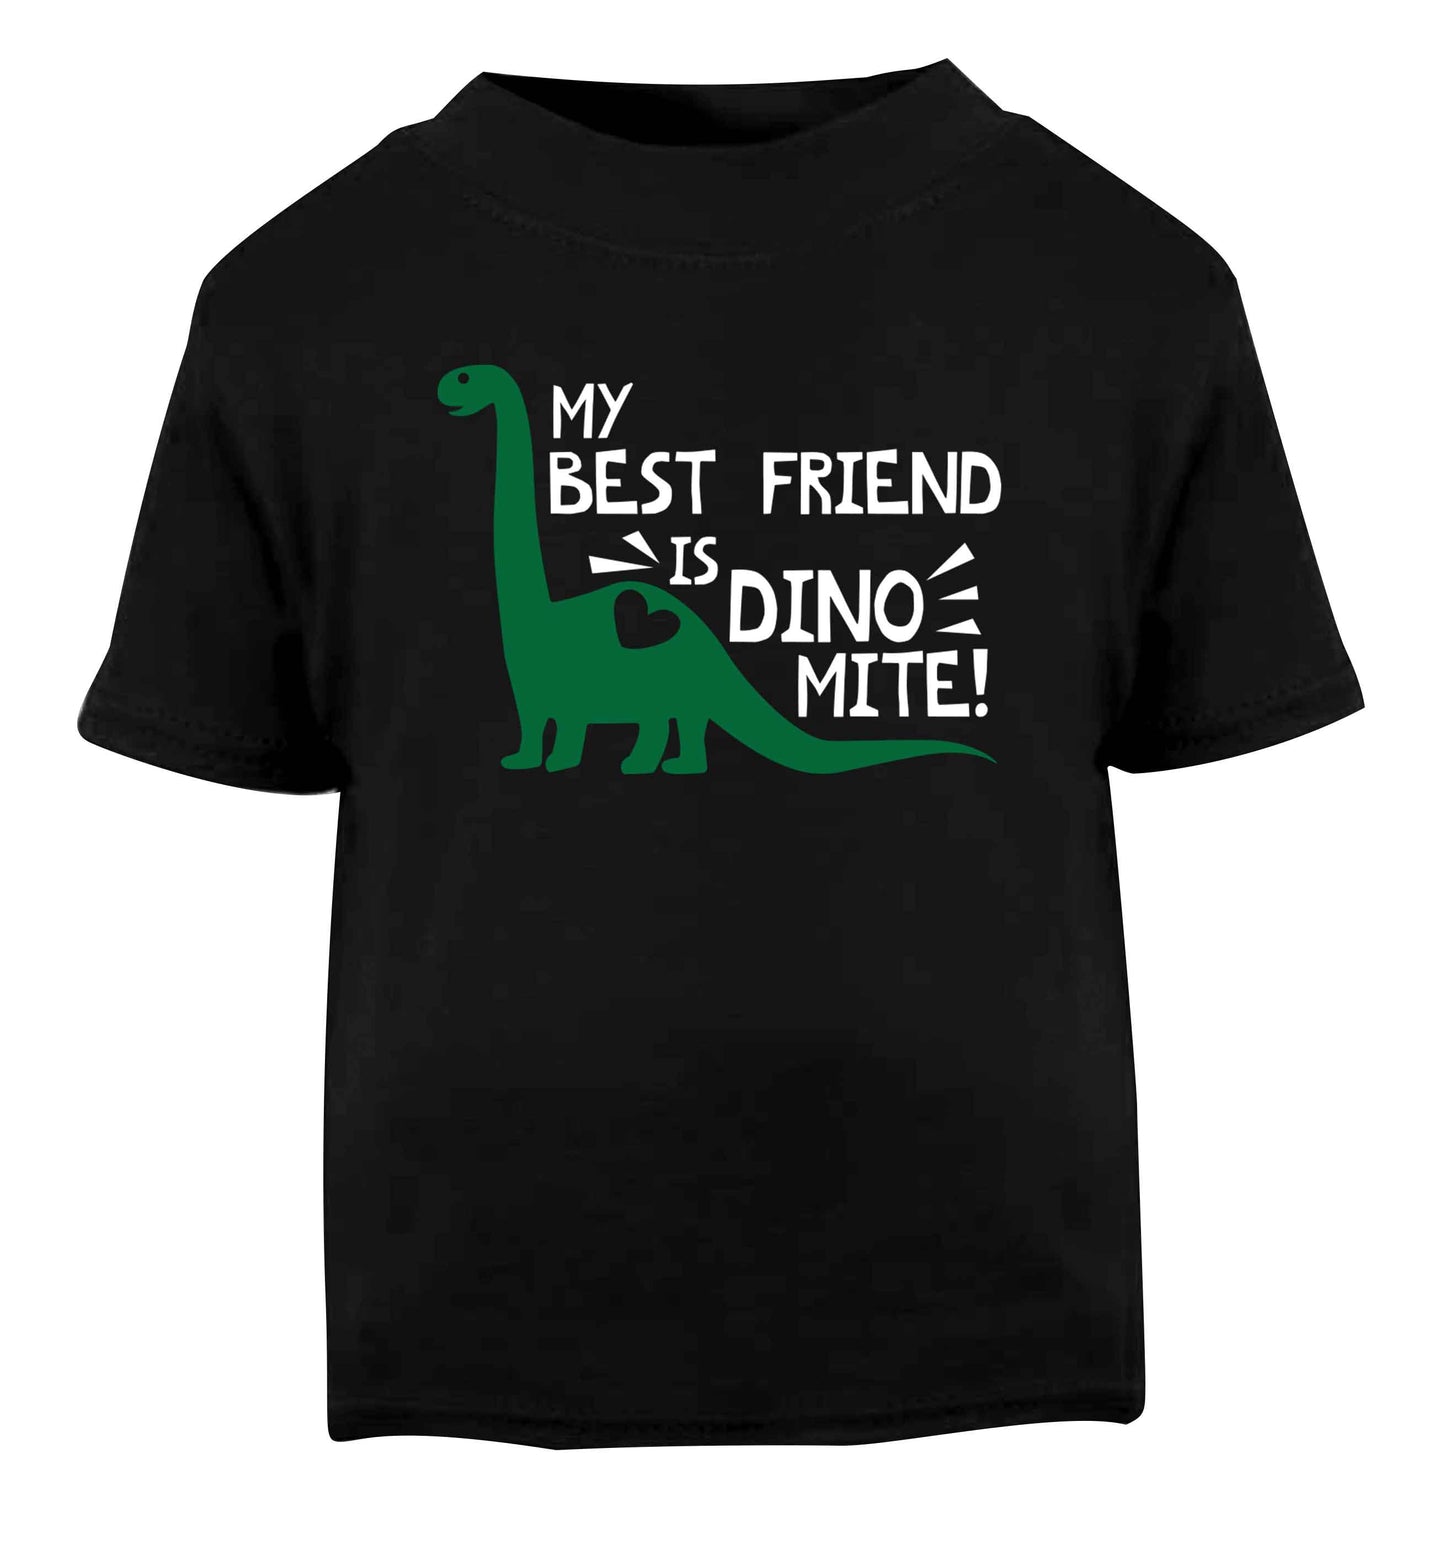 My best friend is dinomite! Black Baby Toddler Tshirt 2 years